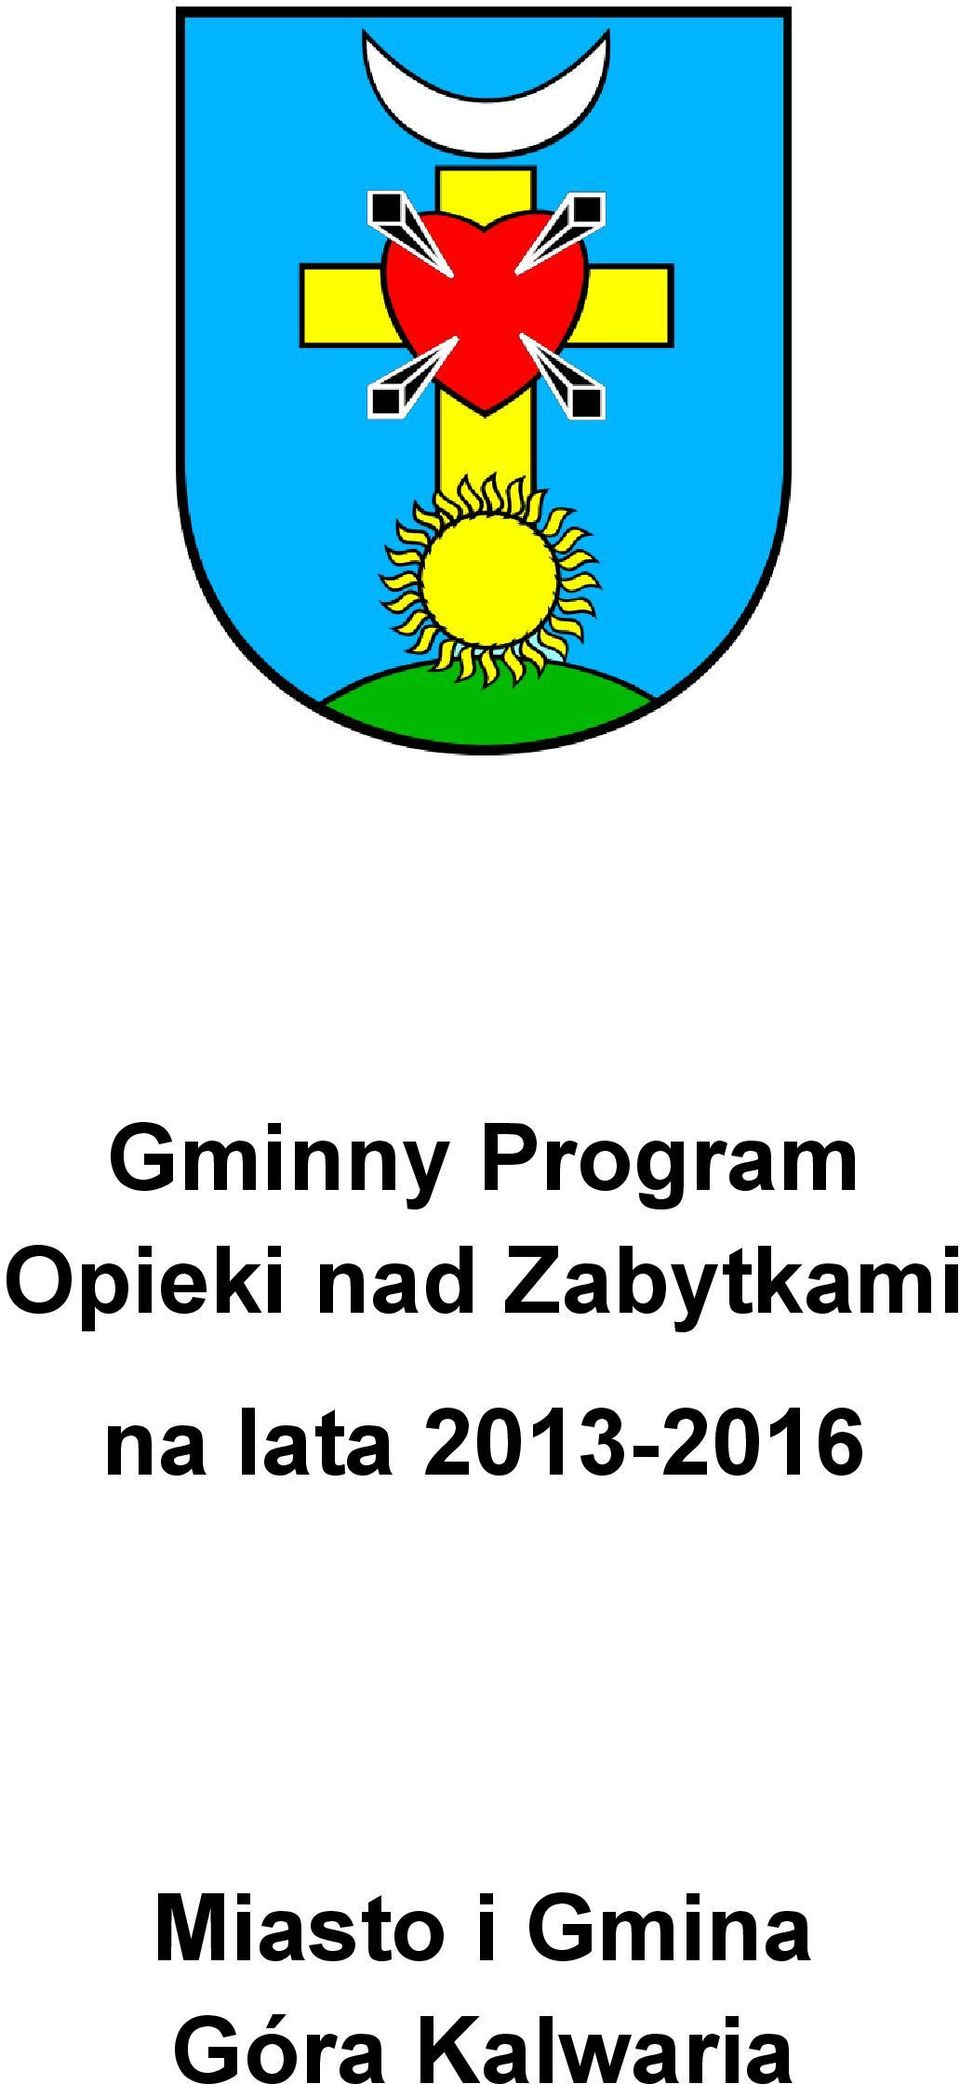 na lata 2013-2016